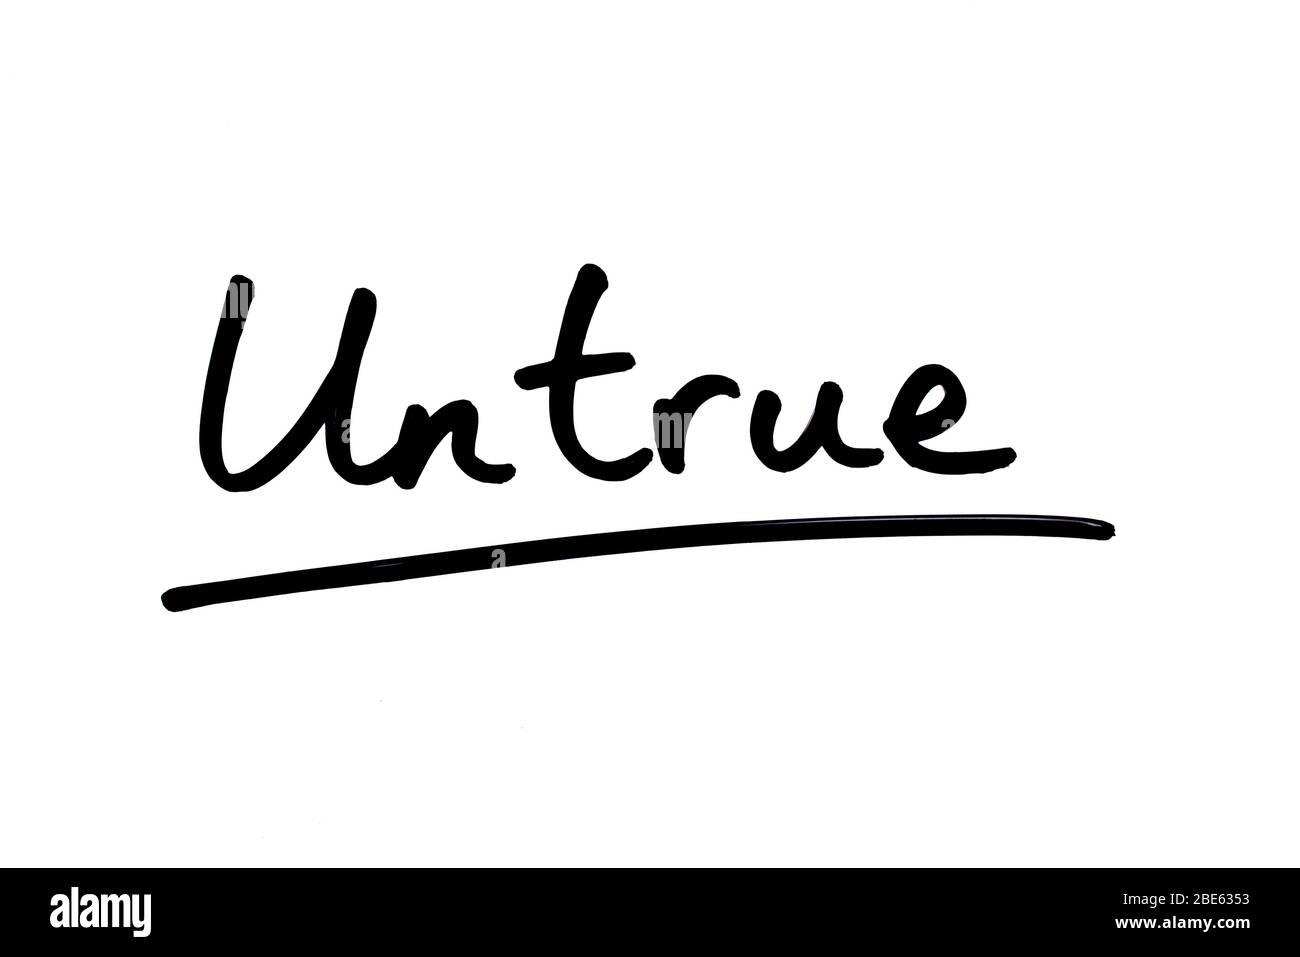 The word Untrue! handwritten on a white background. Stock Photo